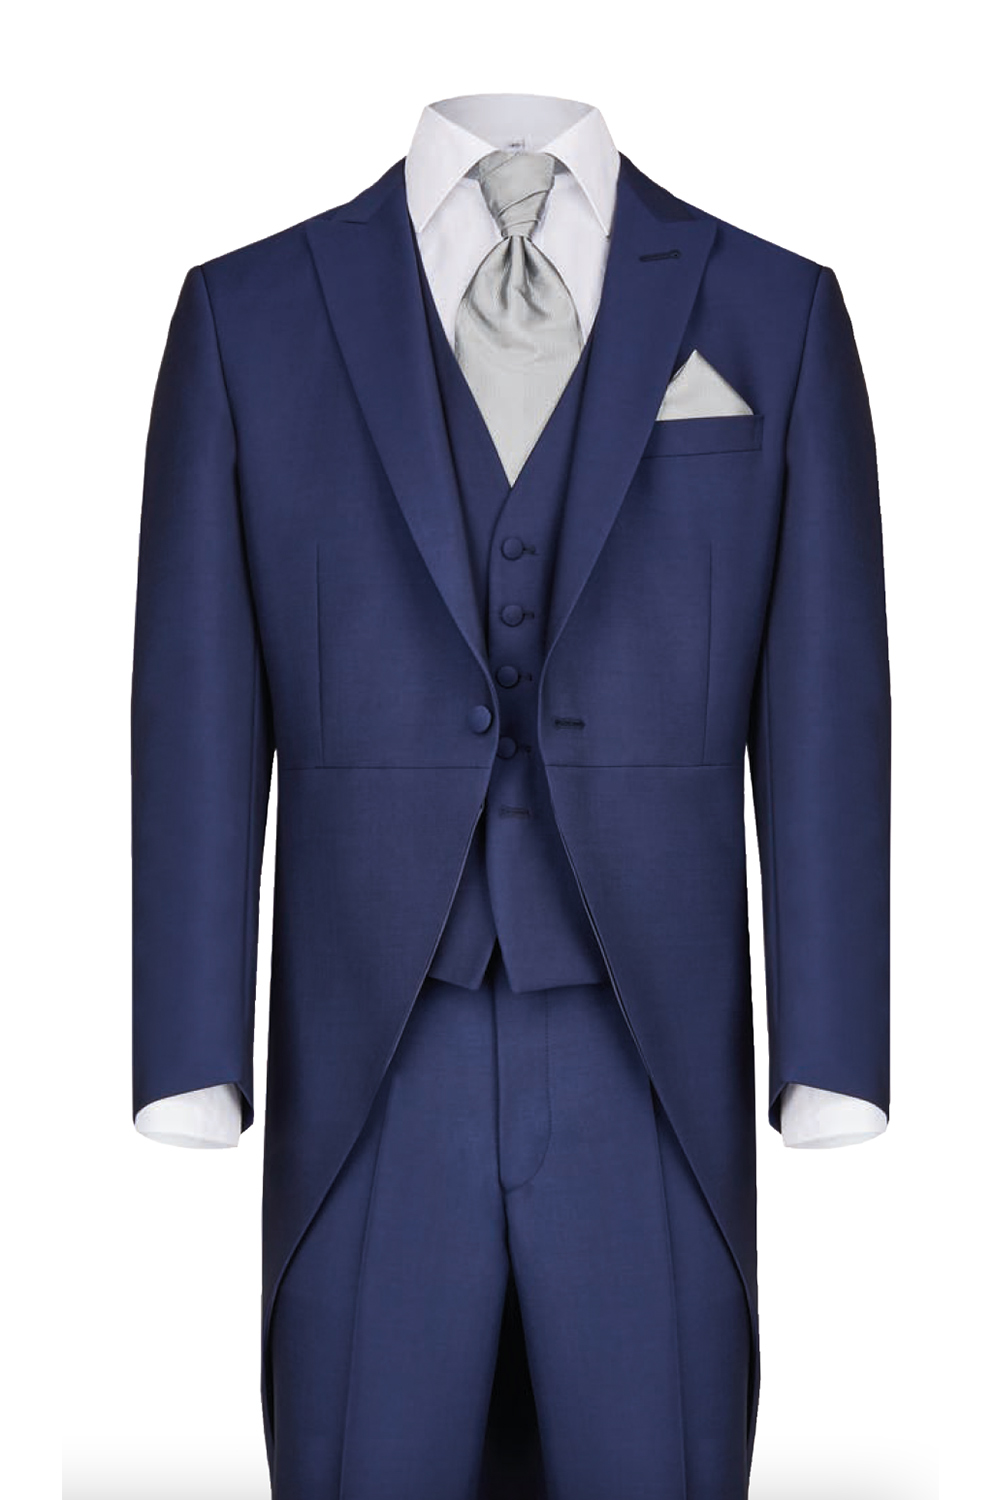 Royal Blue Morning Coat 3 Piece Suit